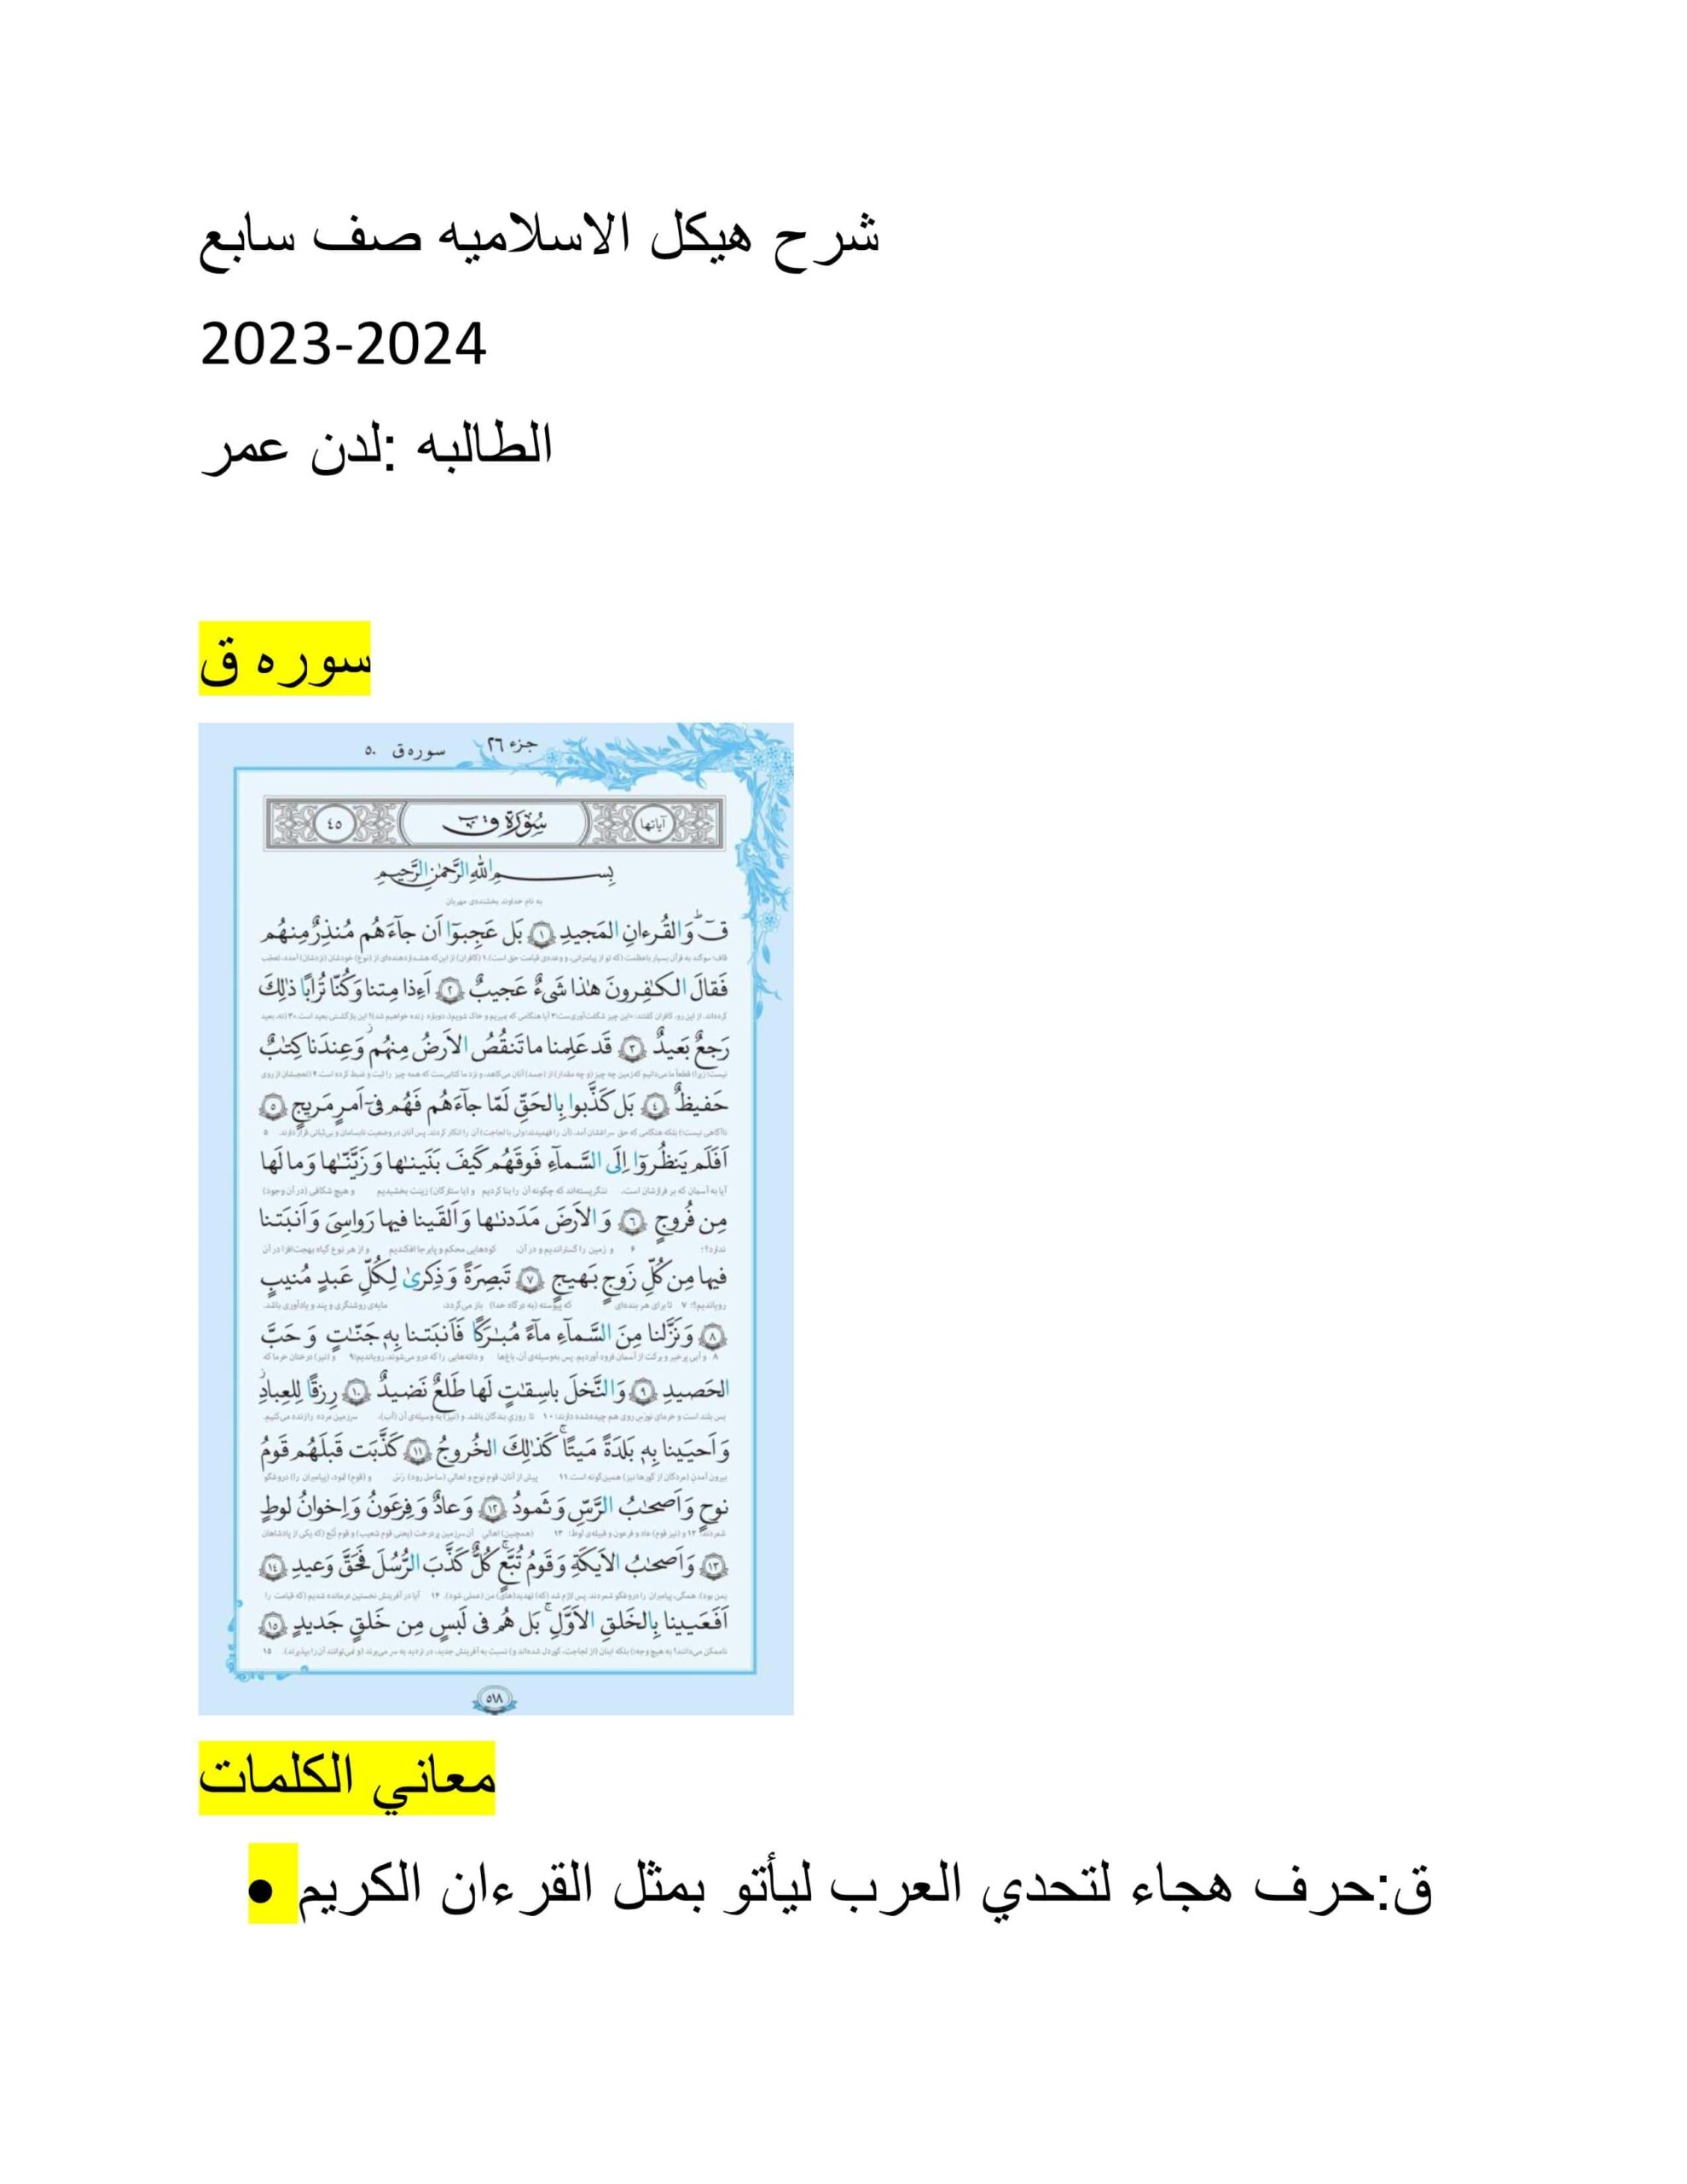 تجميع صفحات هيكل امتحان التربية الإسلامية الصف السابع 